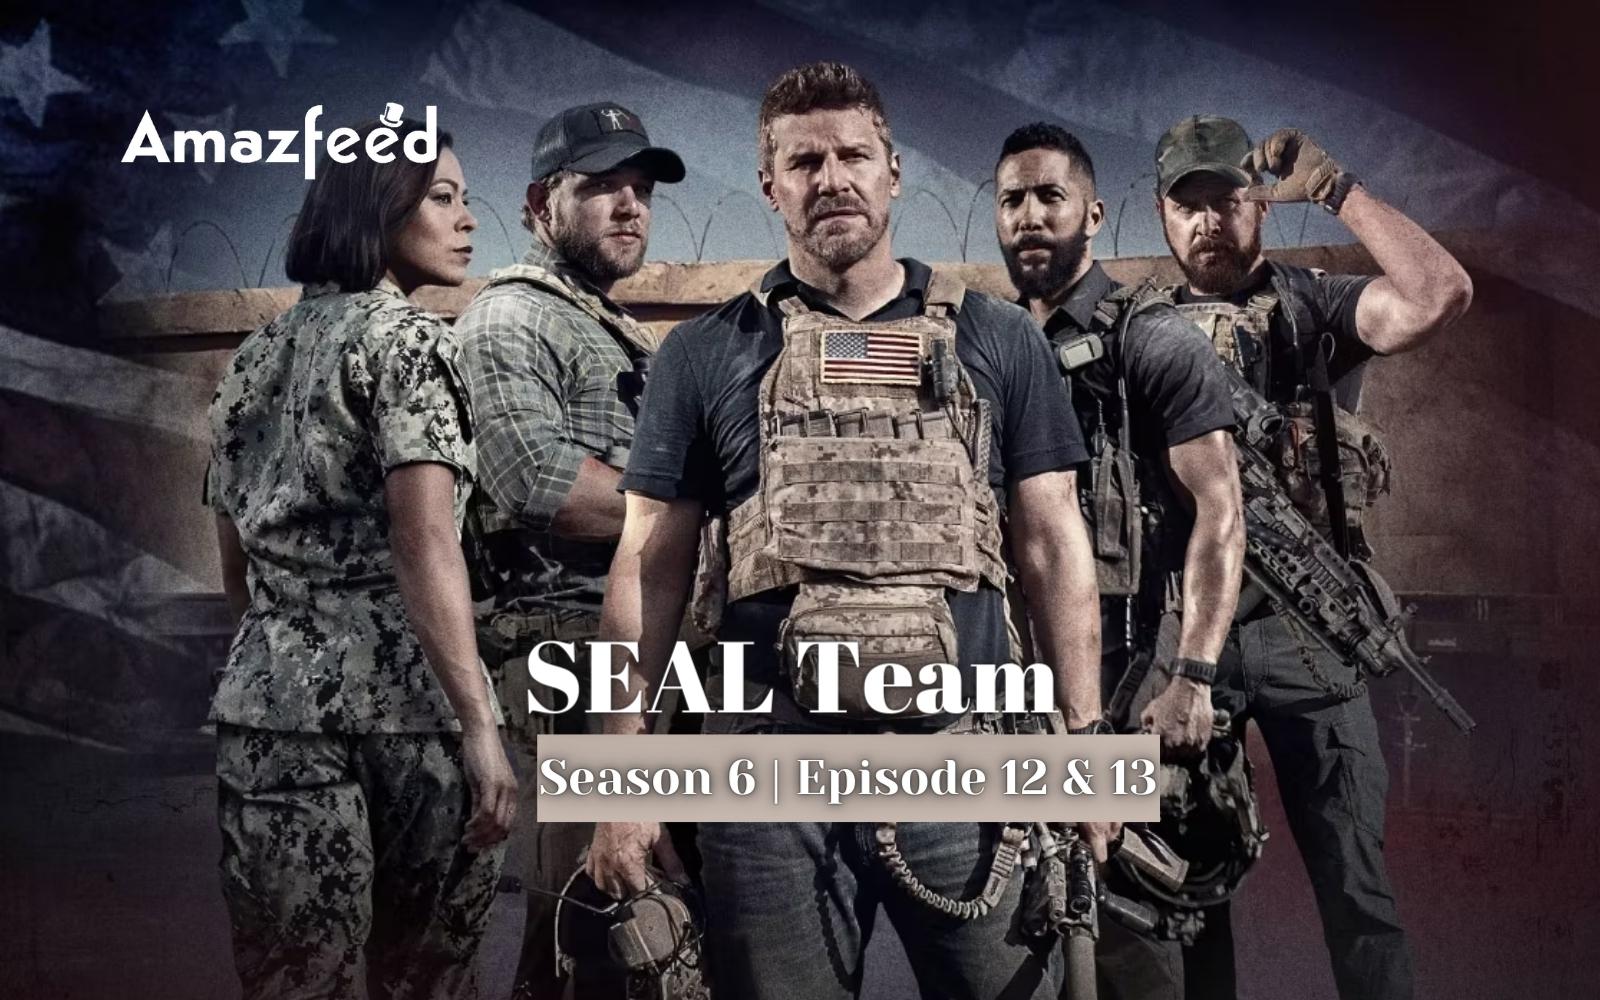 SEAL Team Season 6 Episode 12 & 13